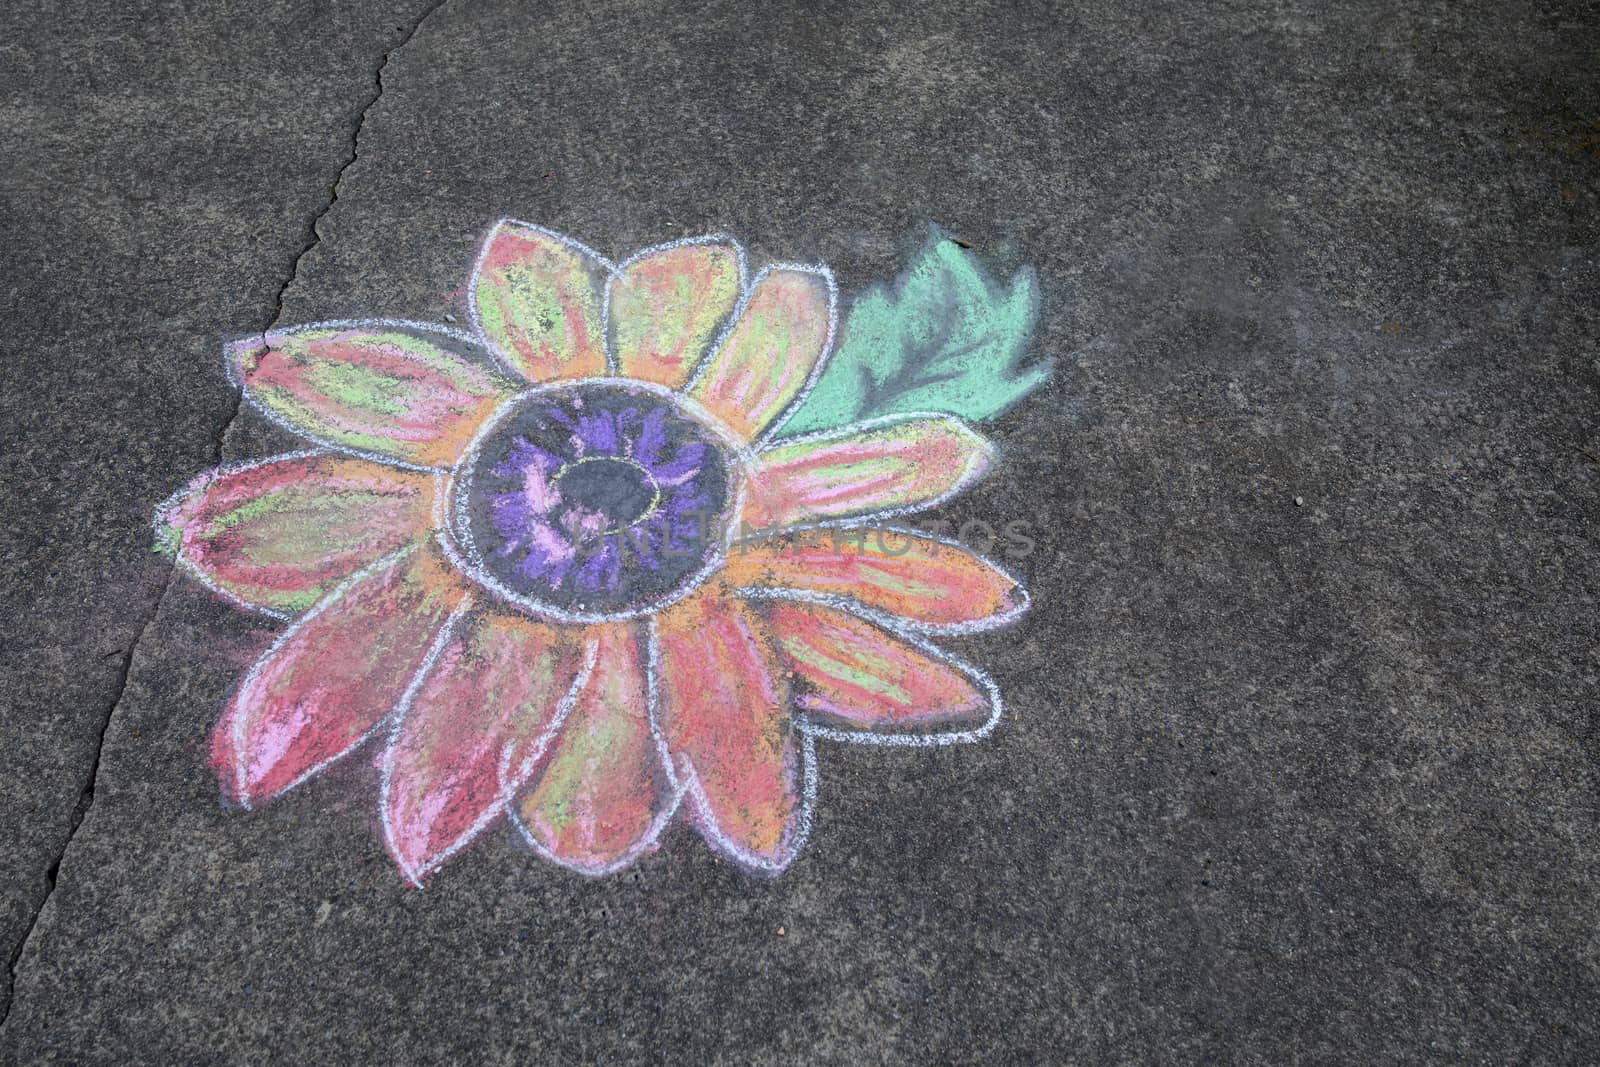 Sidewalk Daisy Art by CharlieFloyd